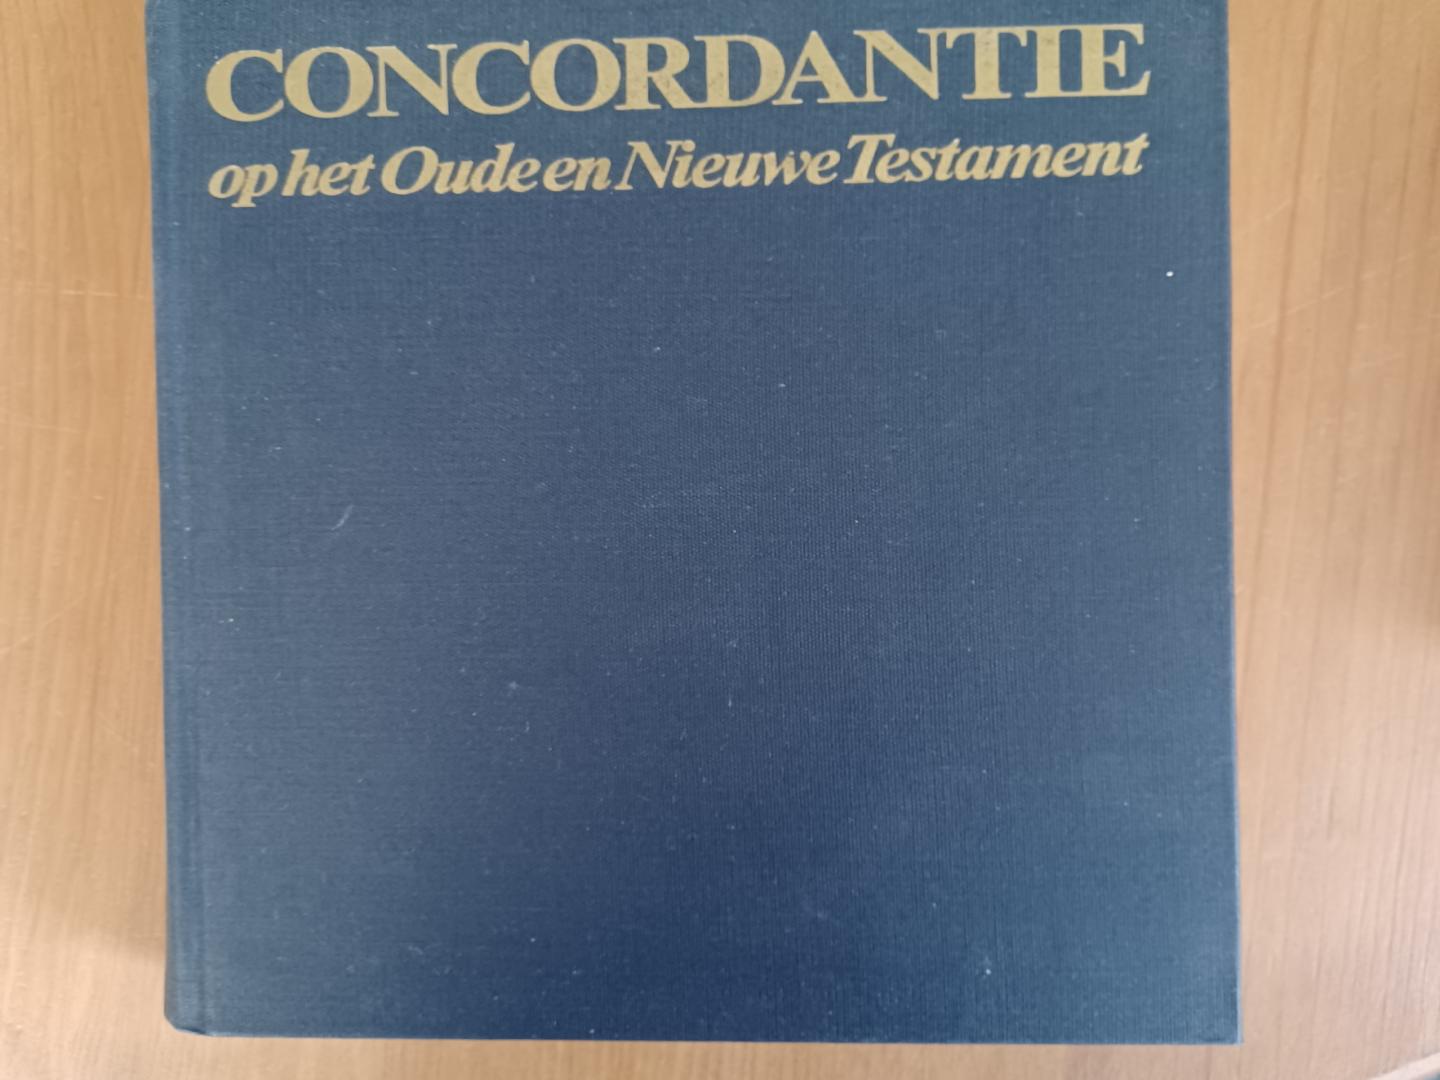 Dee, S.P. Schoneveld, J. - Concordantie op het Oude en Nieuwe Testament in de nieuwe vertaling van het Nederlandsch Bijbelgenootschap / druk 1